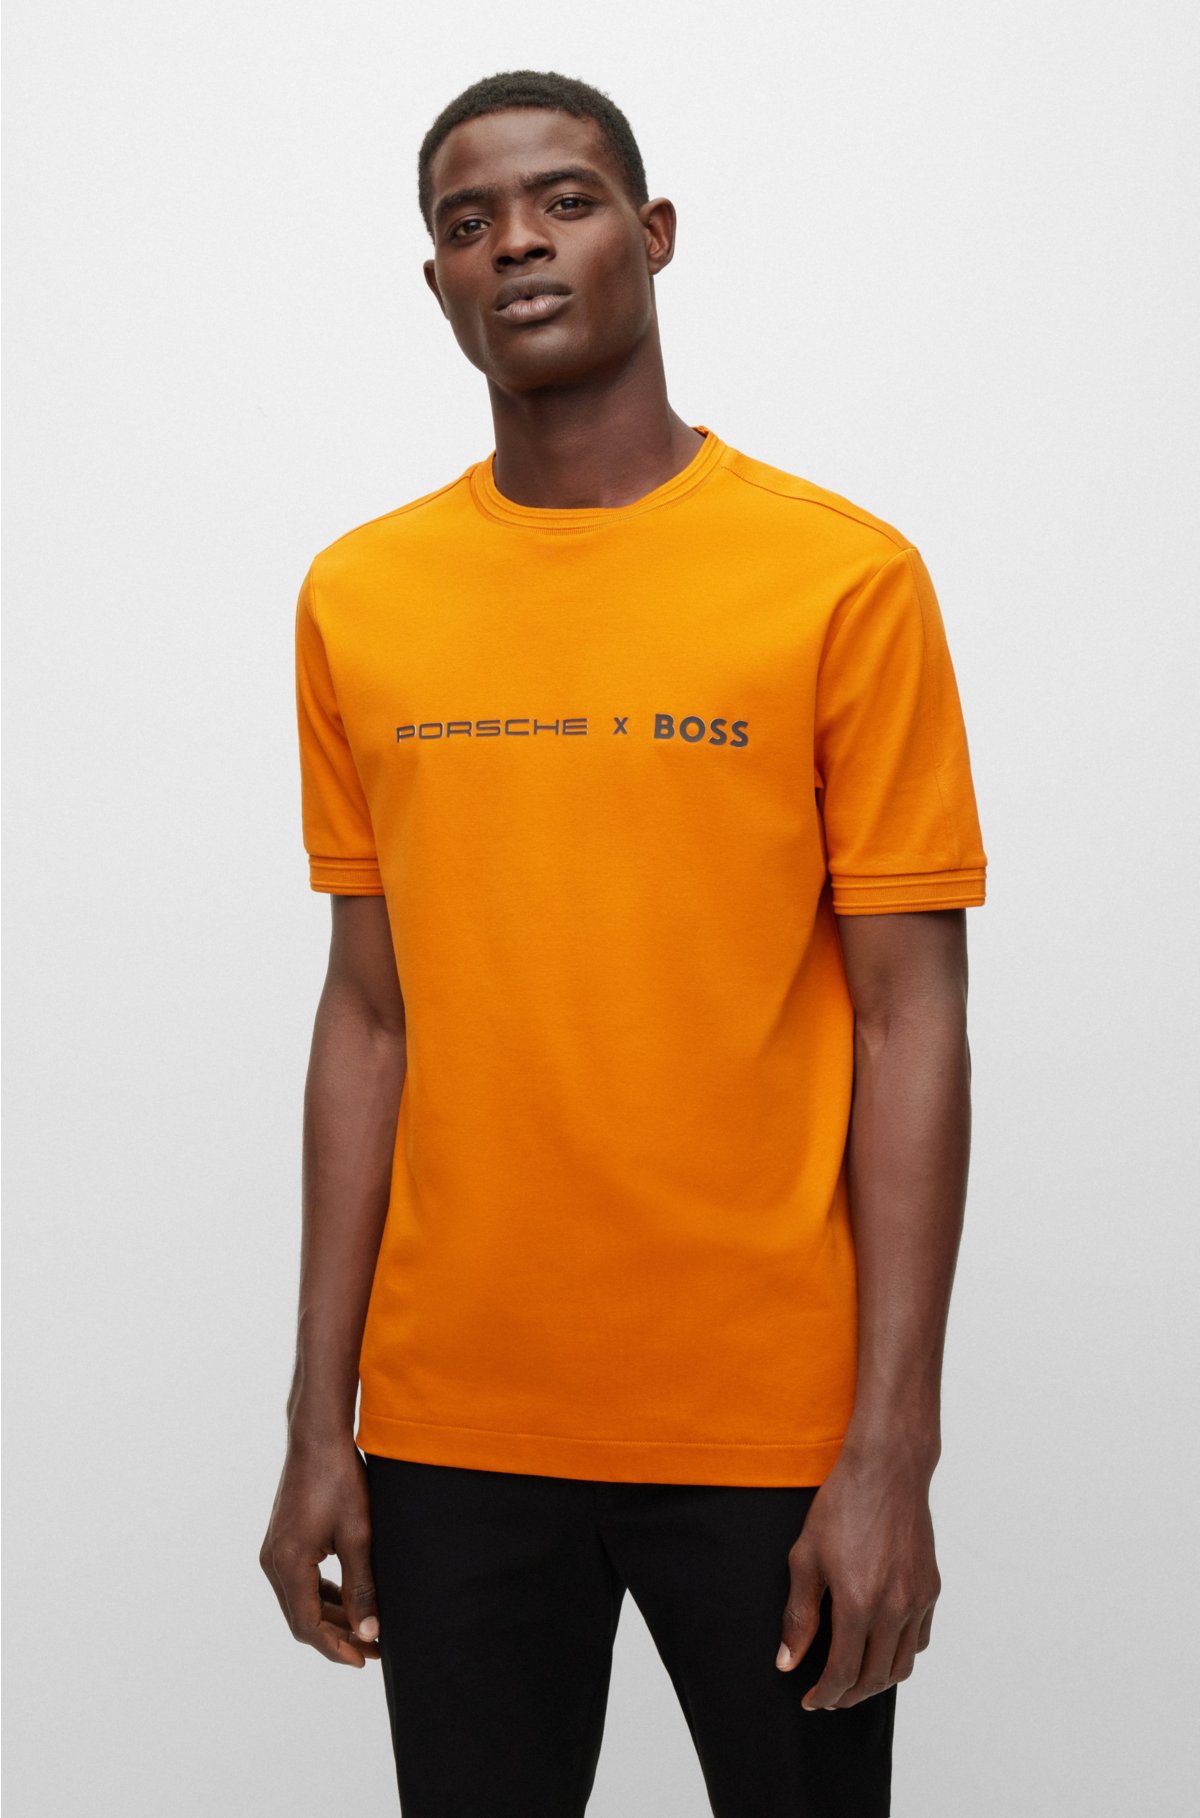 BOSS - Porsche x BOSS T-shirt with exclusive branding